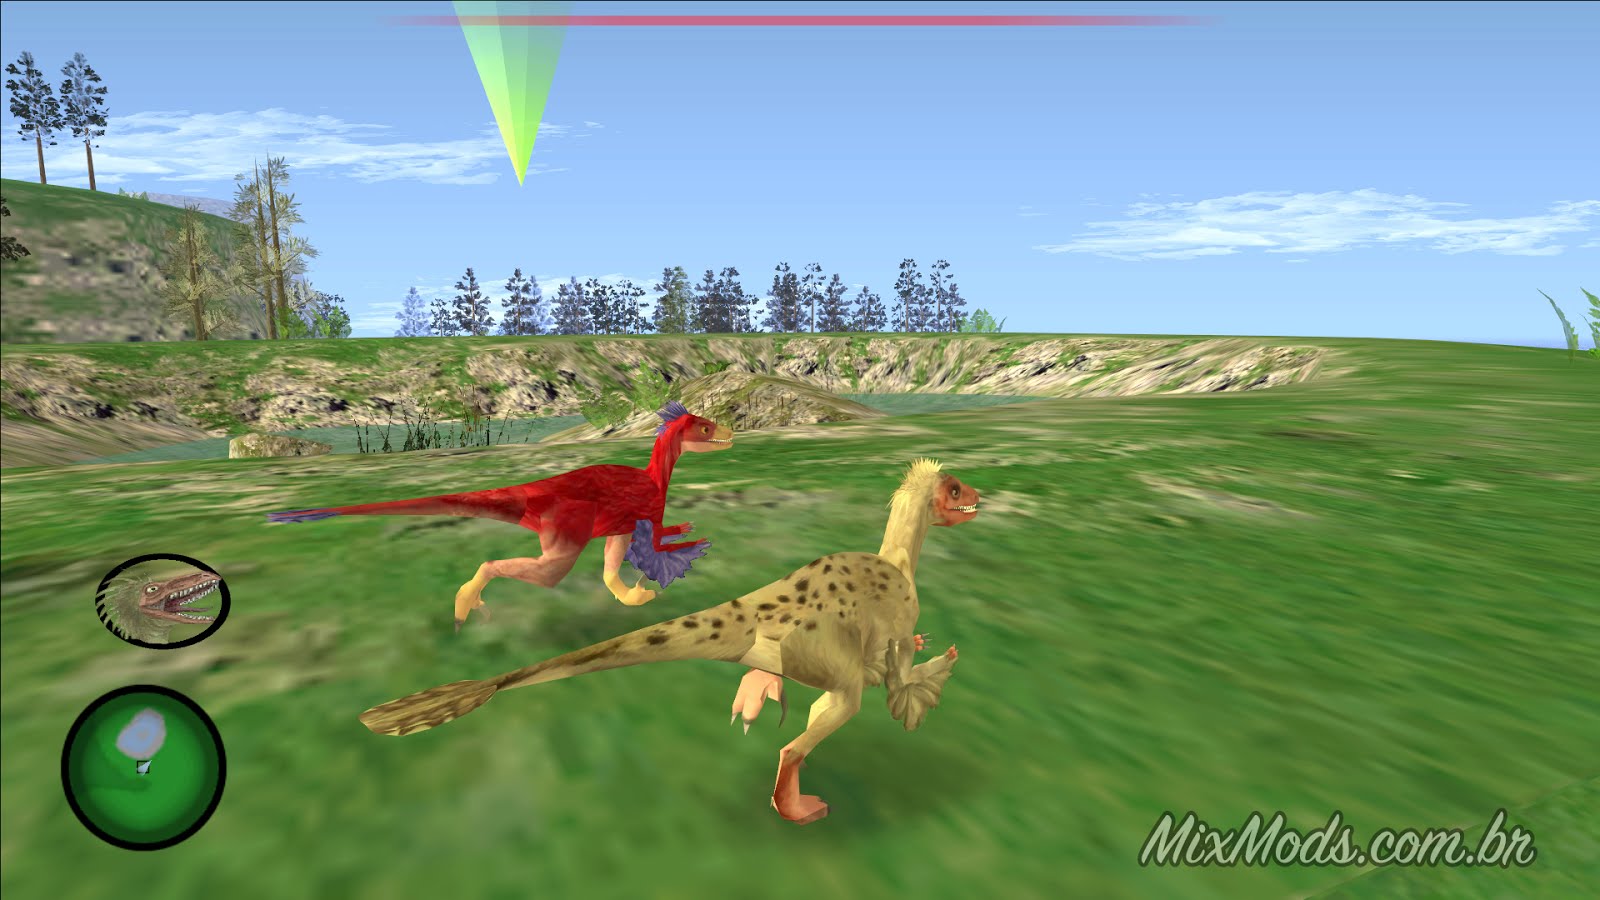 Finalmente! Skyrim ganha mod com dinossauros no mapa